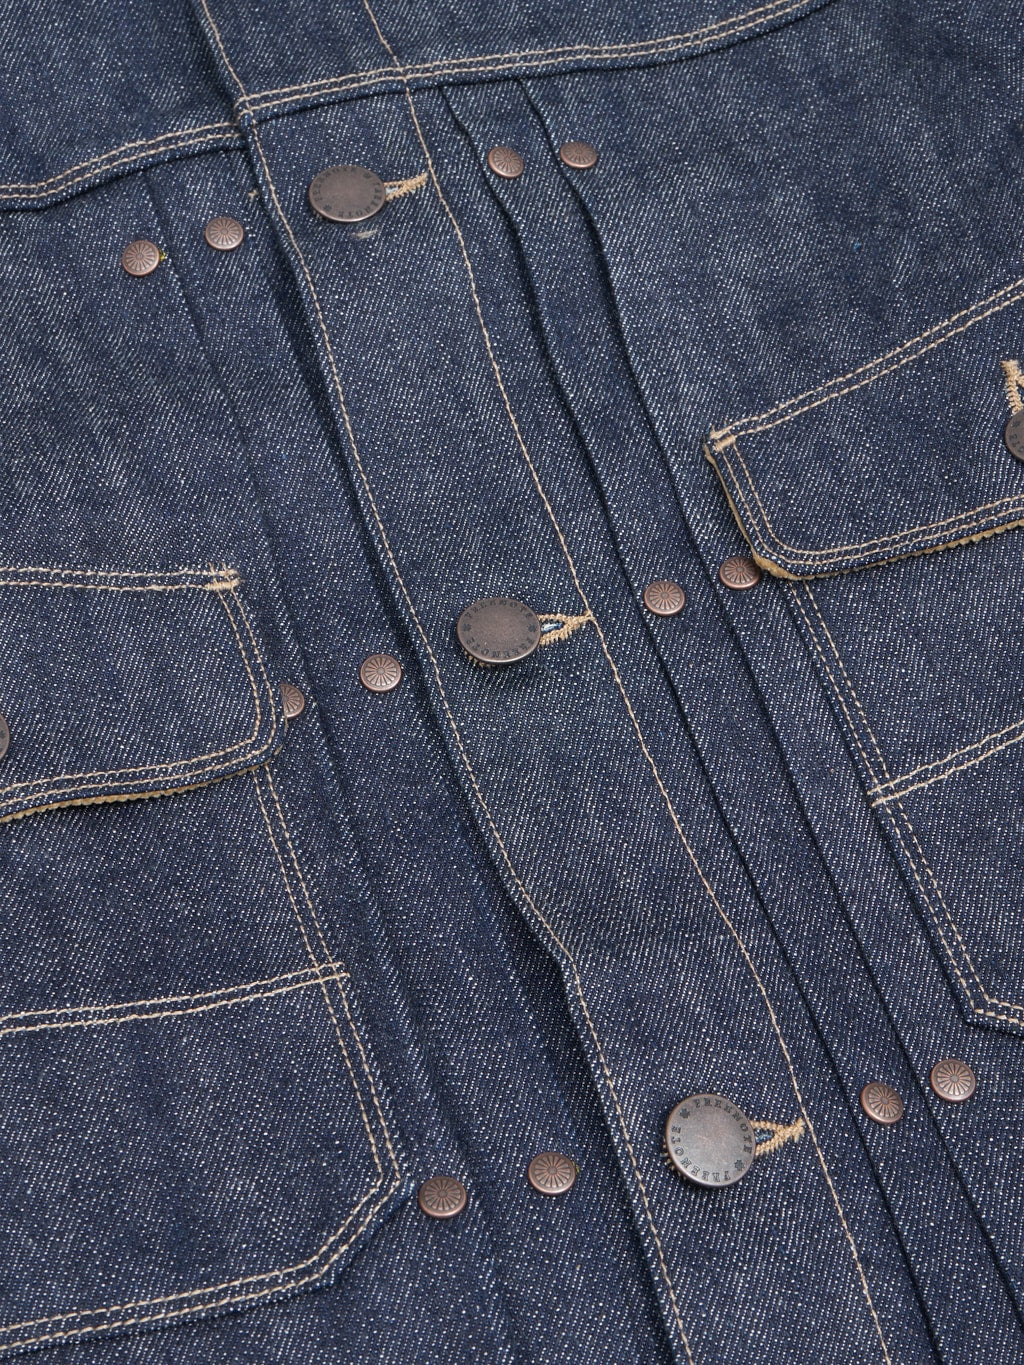 freenote cloth rj 313 ounce indigo selvedge denim jacket  buttons